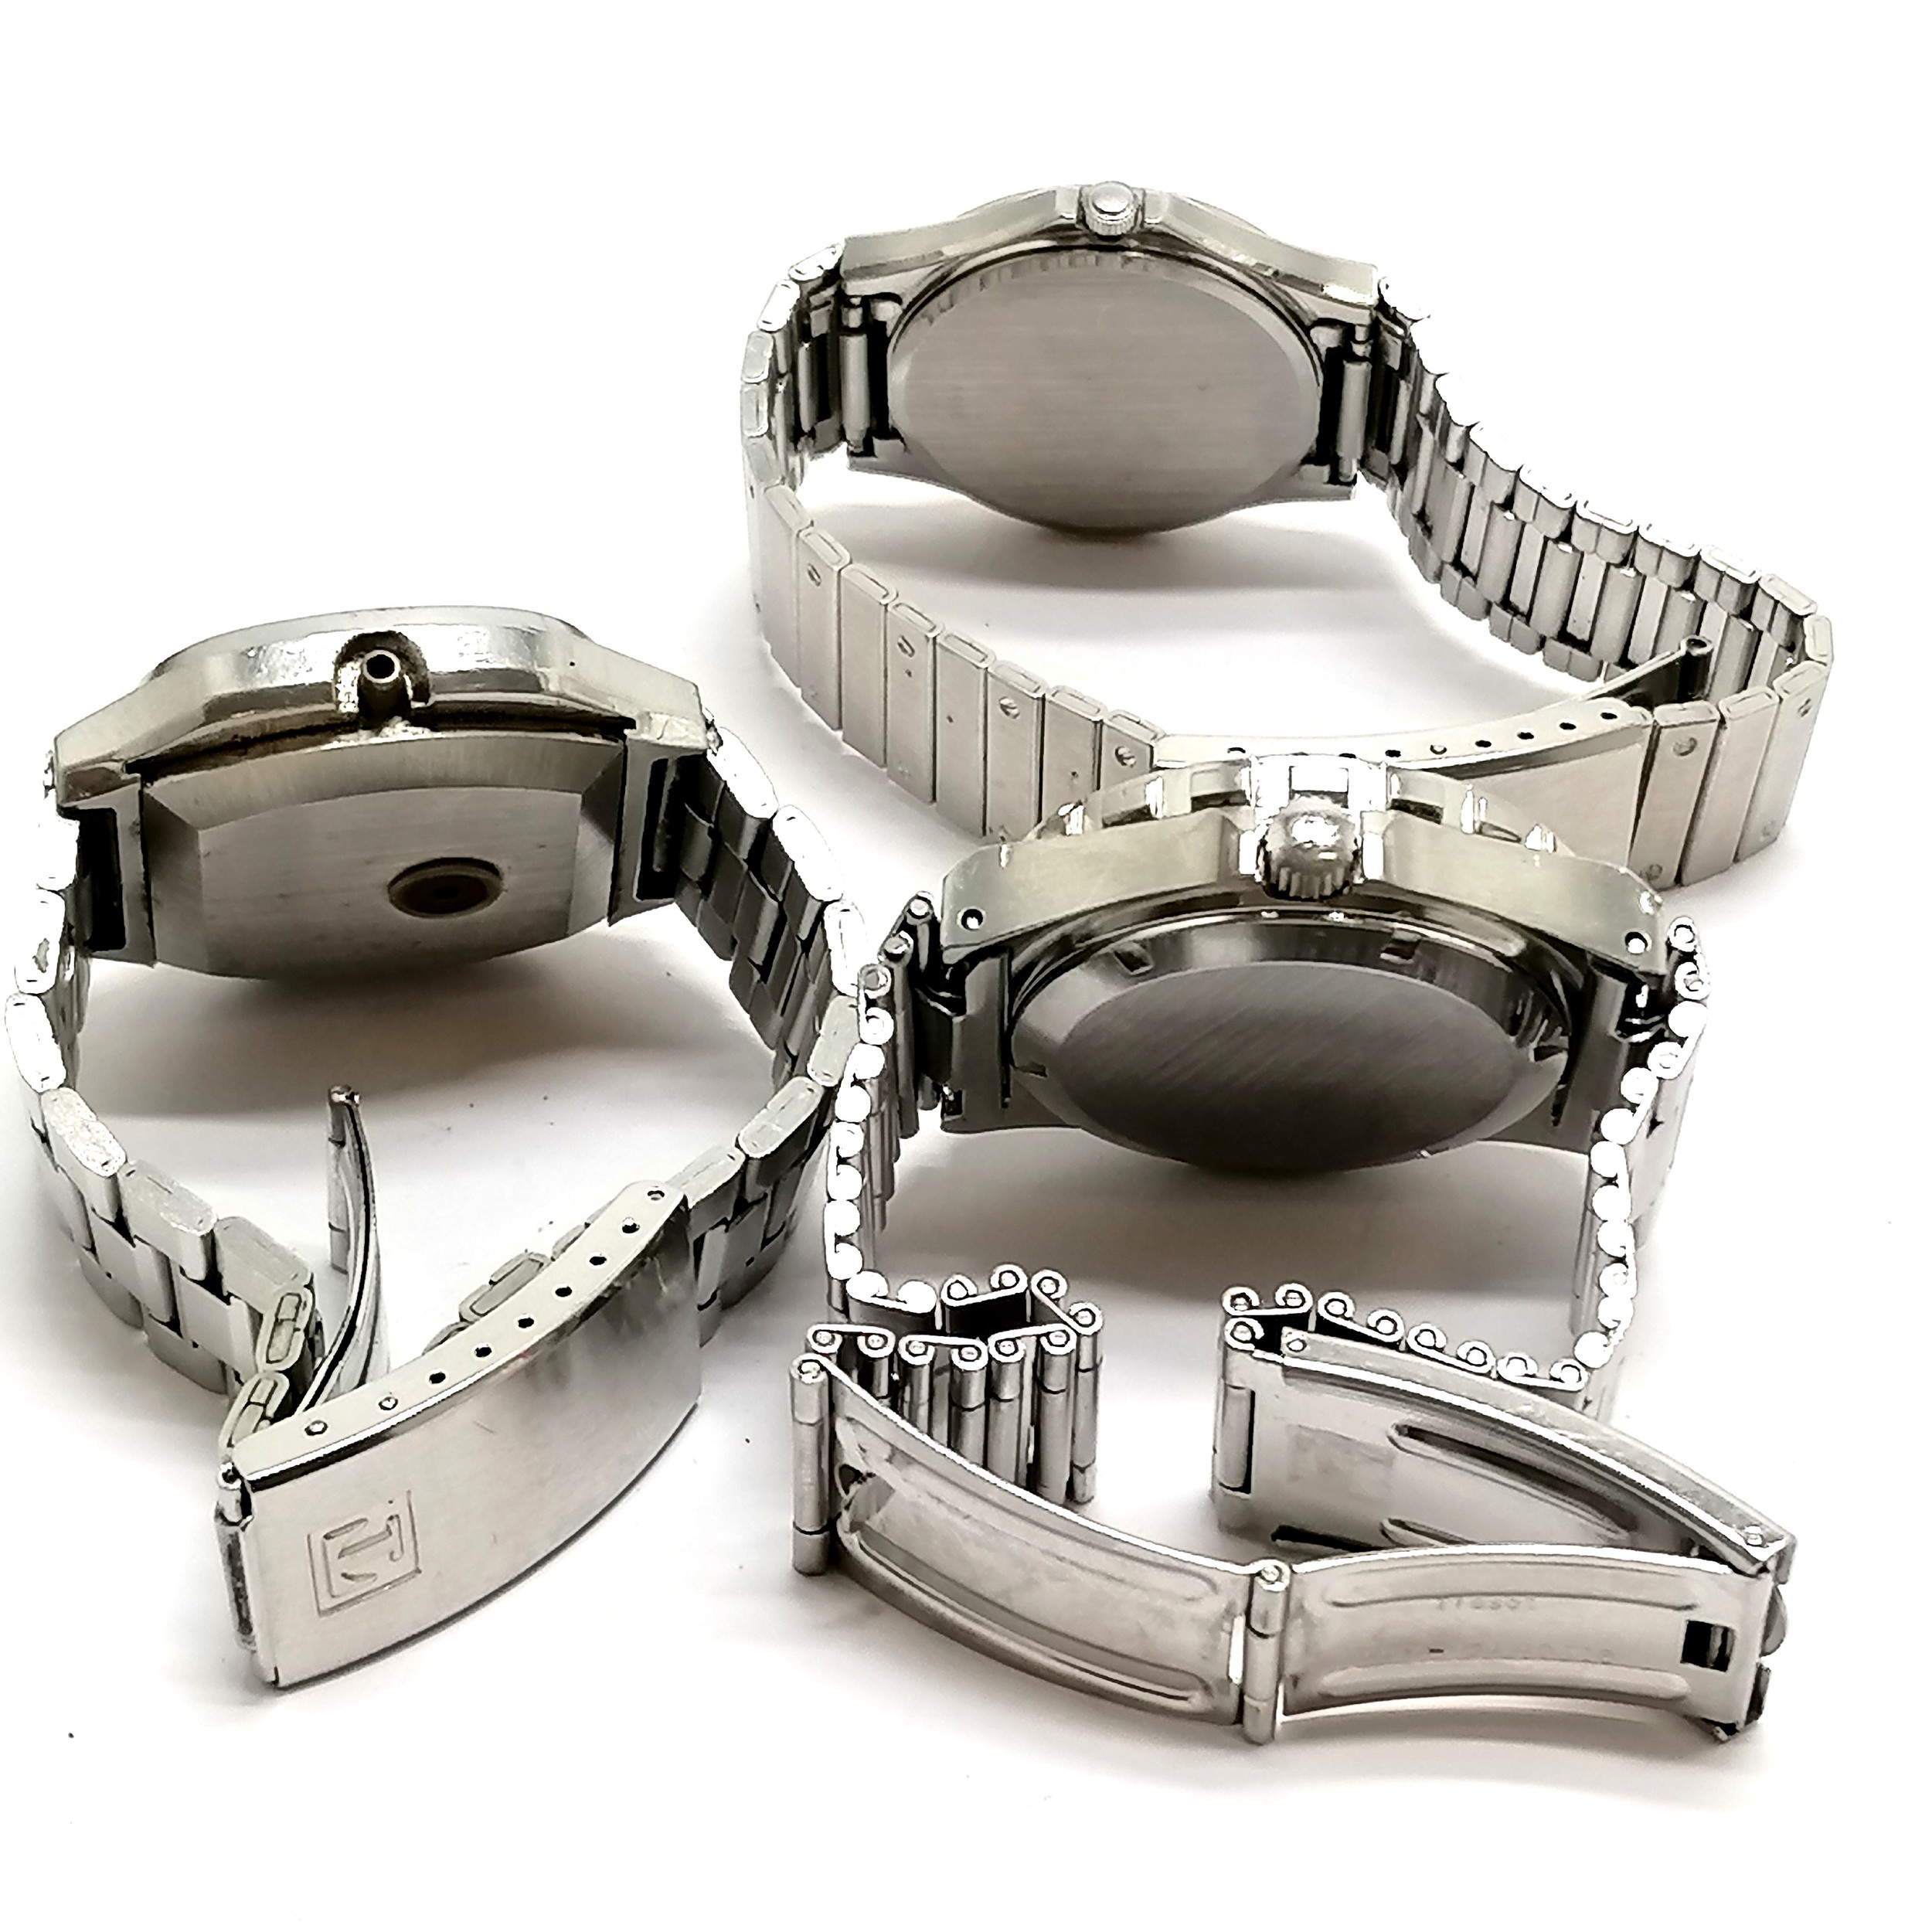 3 x Tissot gents wristwatches inc PR516 quartz Divers style (38mm case), Seastar automatic (lacks - Image 2 of 2